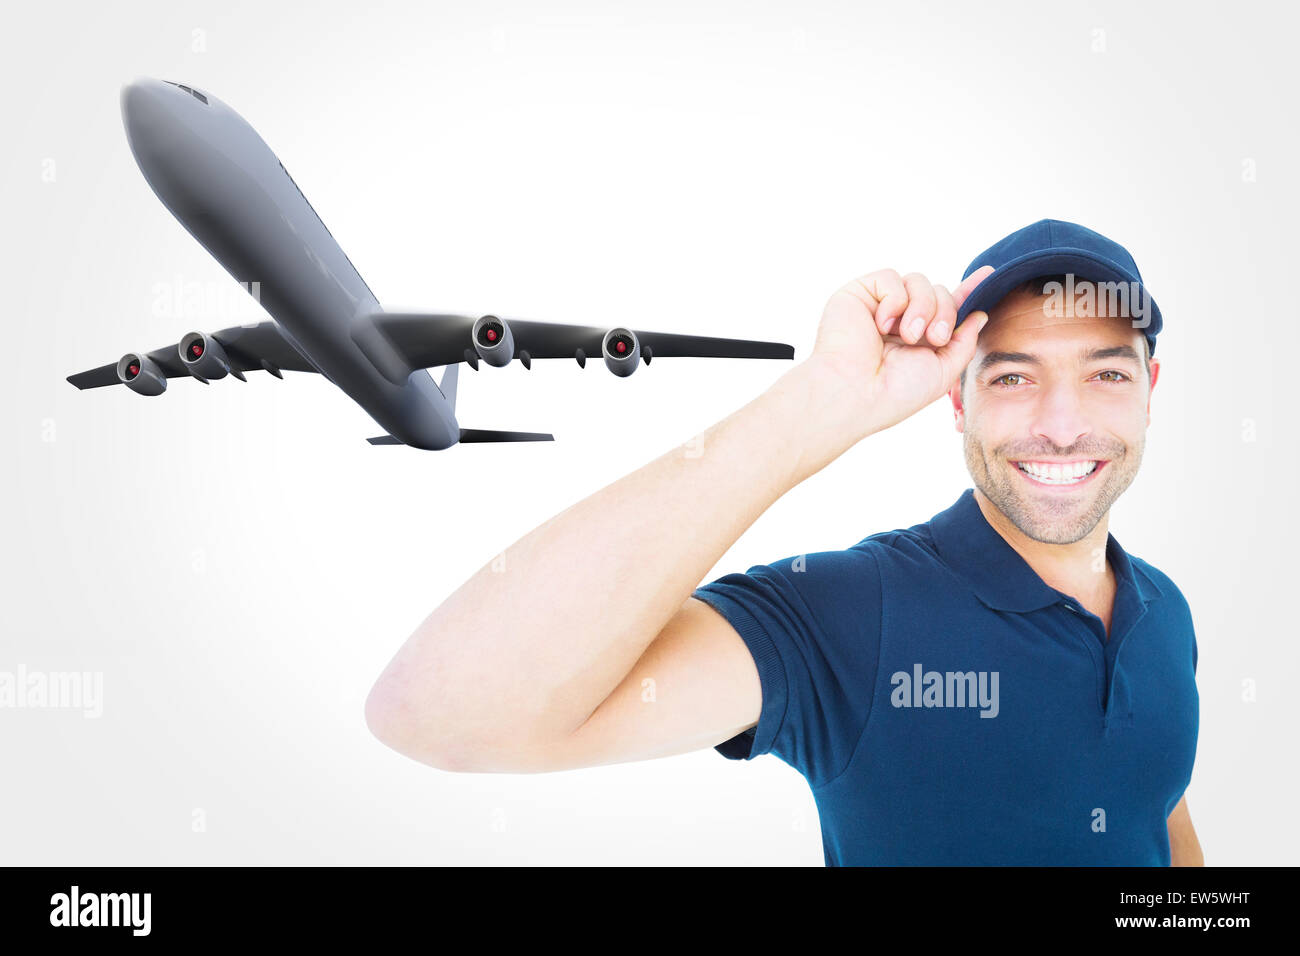 Immagine composita di consegna sorridente uomo che indossa il cappuccio su sfondo bianco Foto Stock